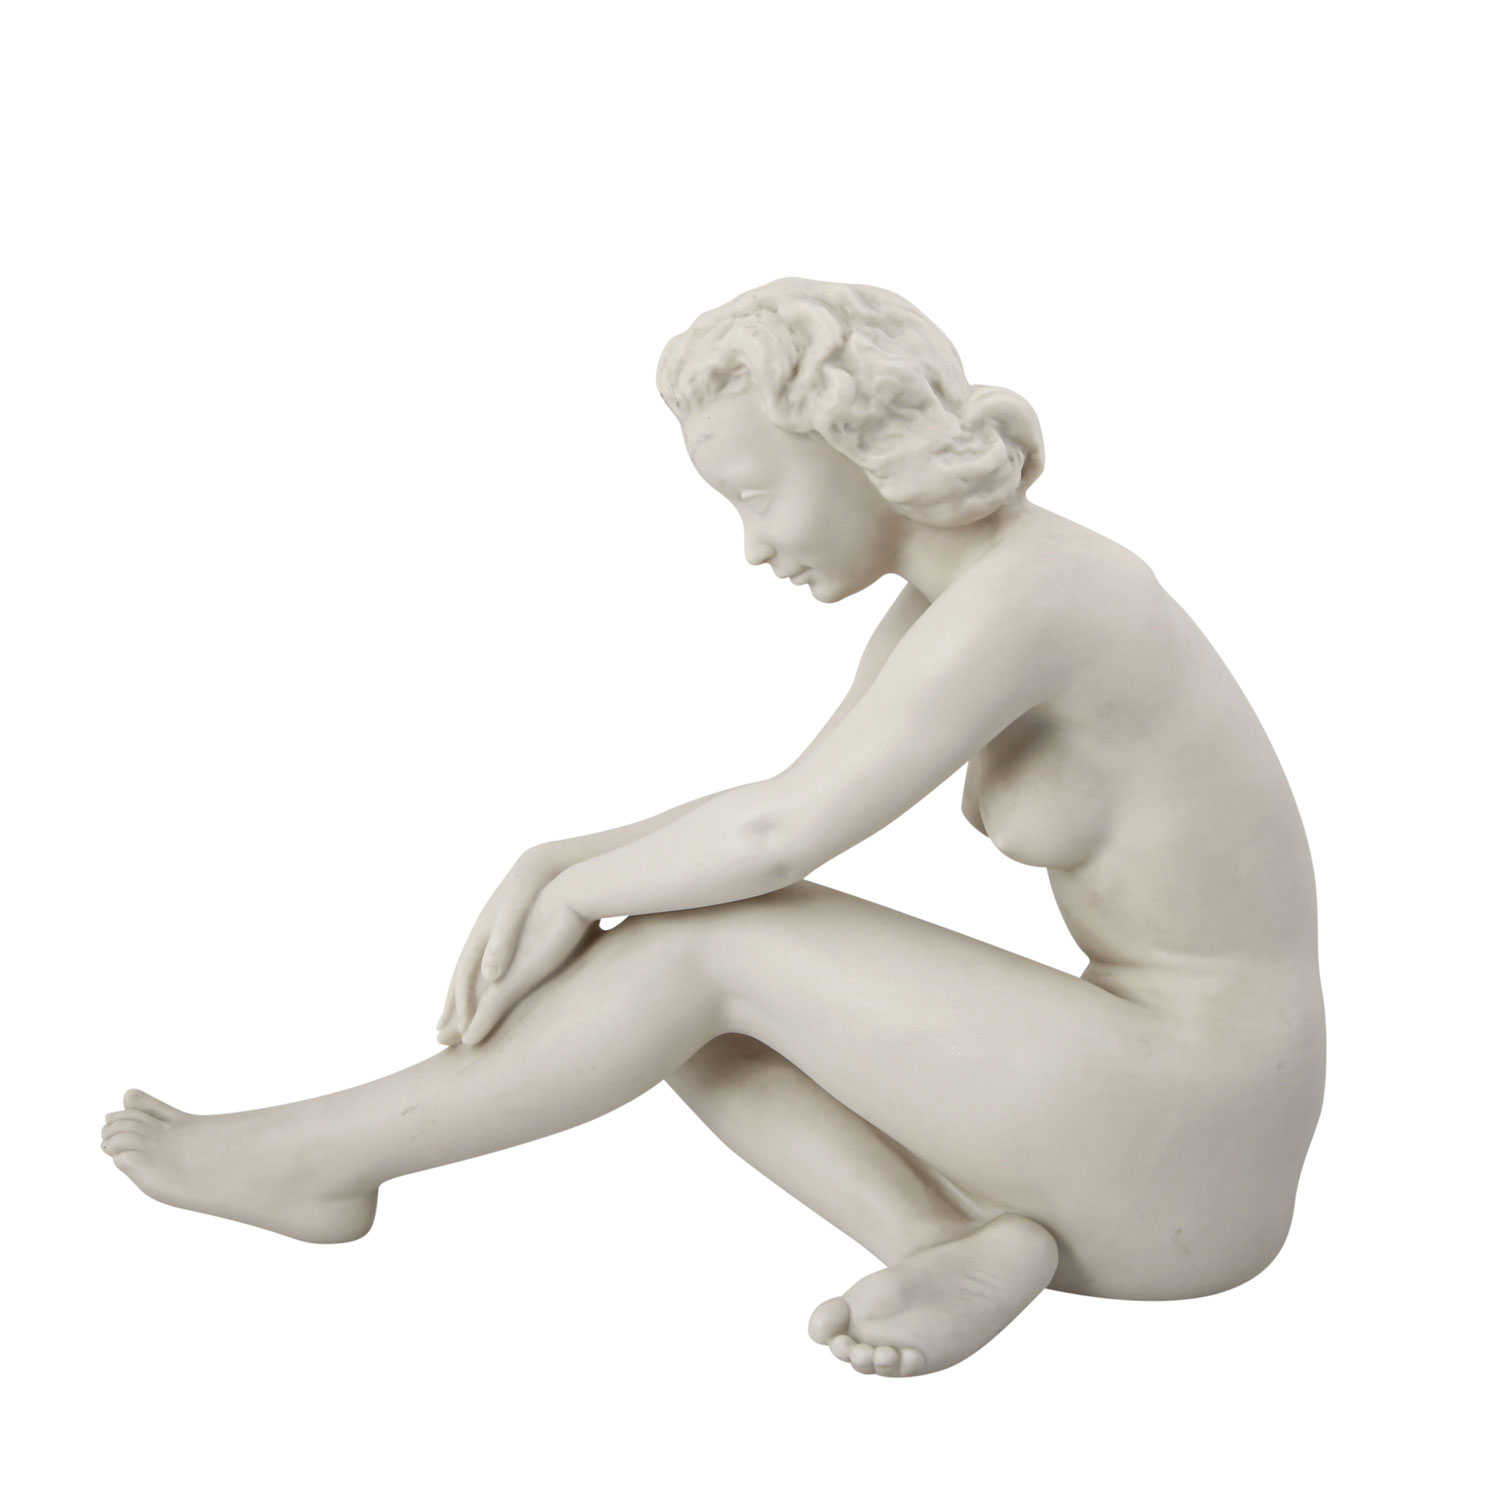 HUTSCHENREUTHER 'Die Sitzende', 20. Jhd..Bisquitporzellan, sitzender Frauenakt, die Hände auf dem - Image 3 of 6